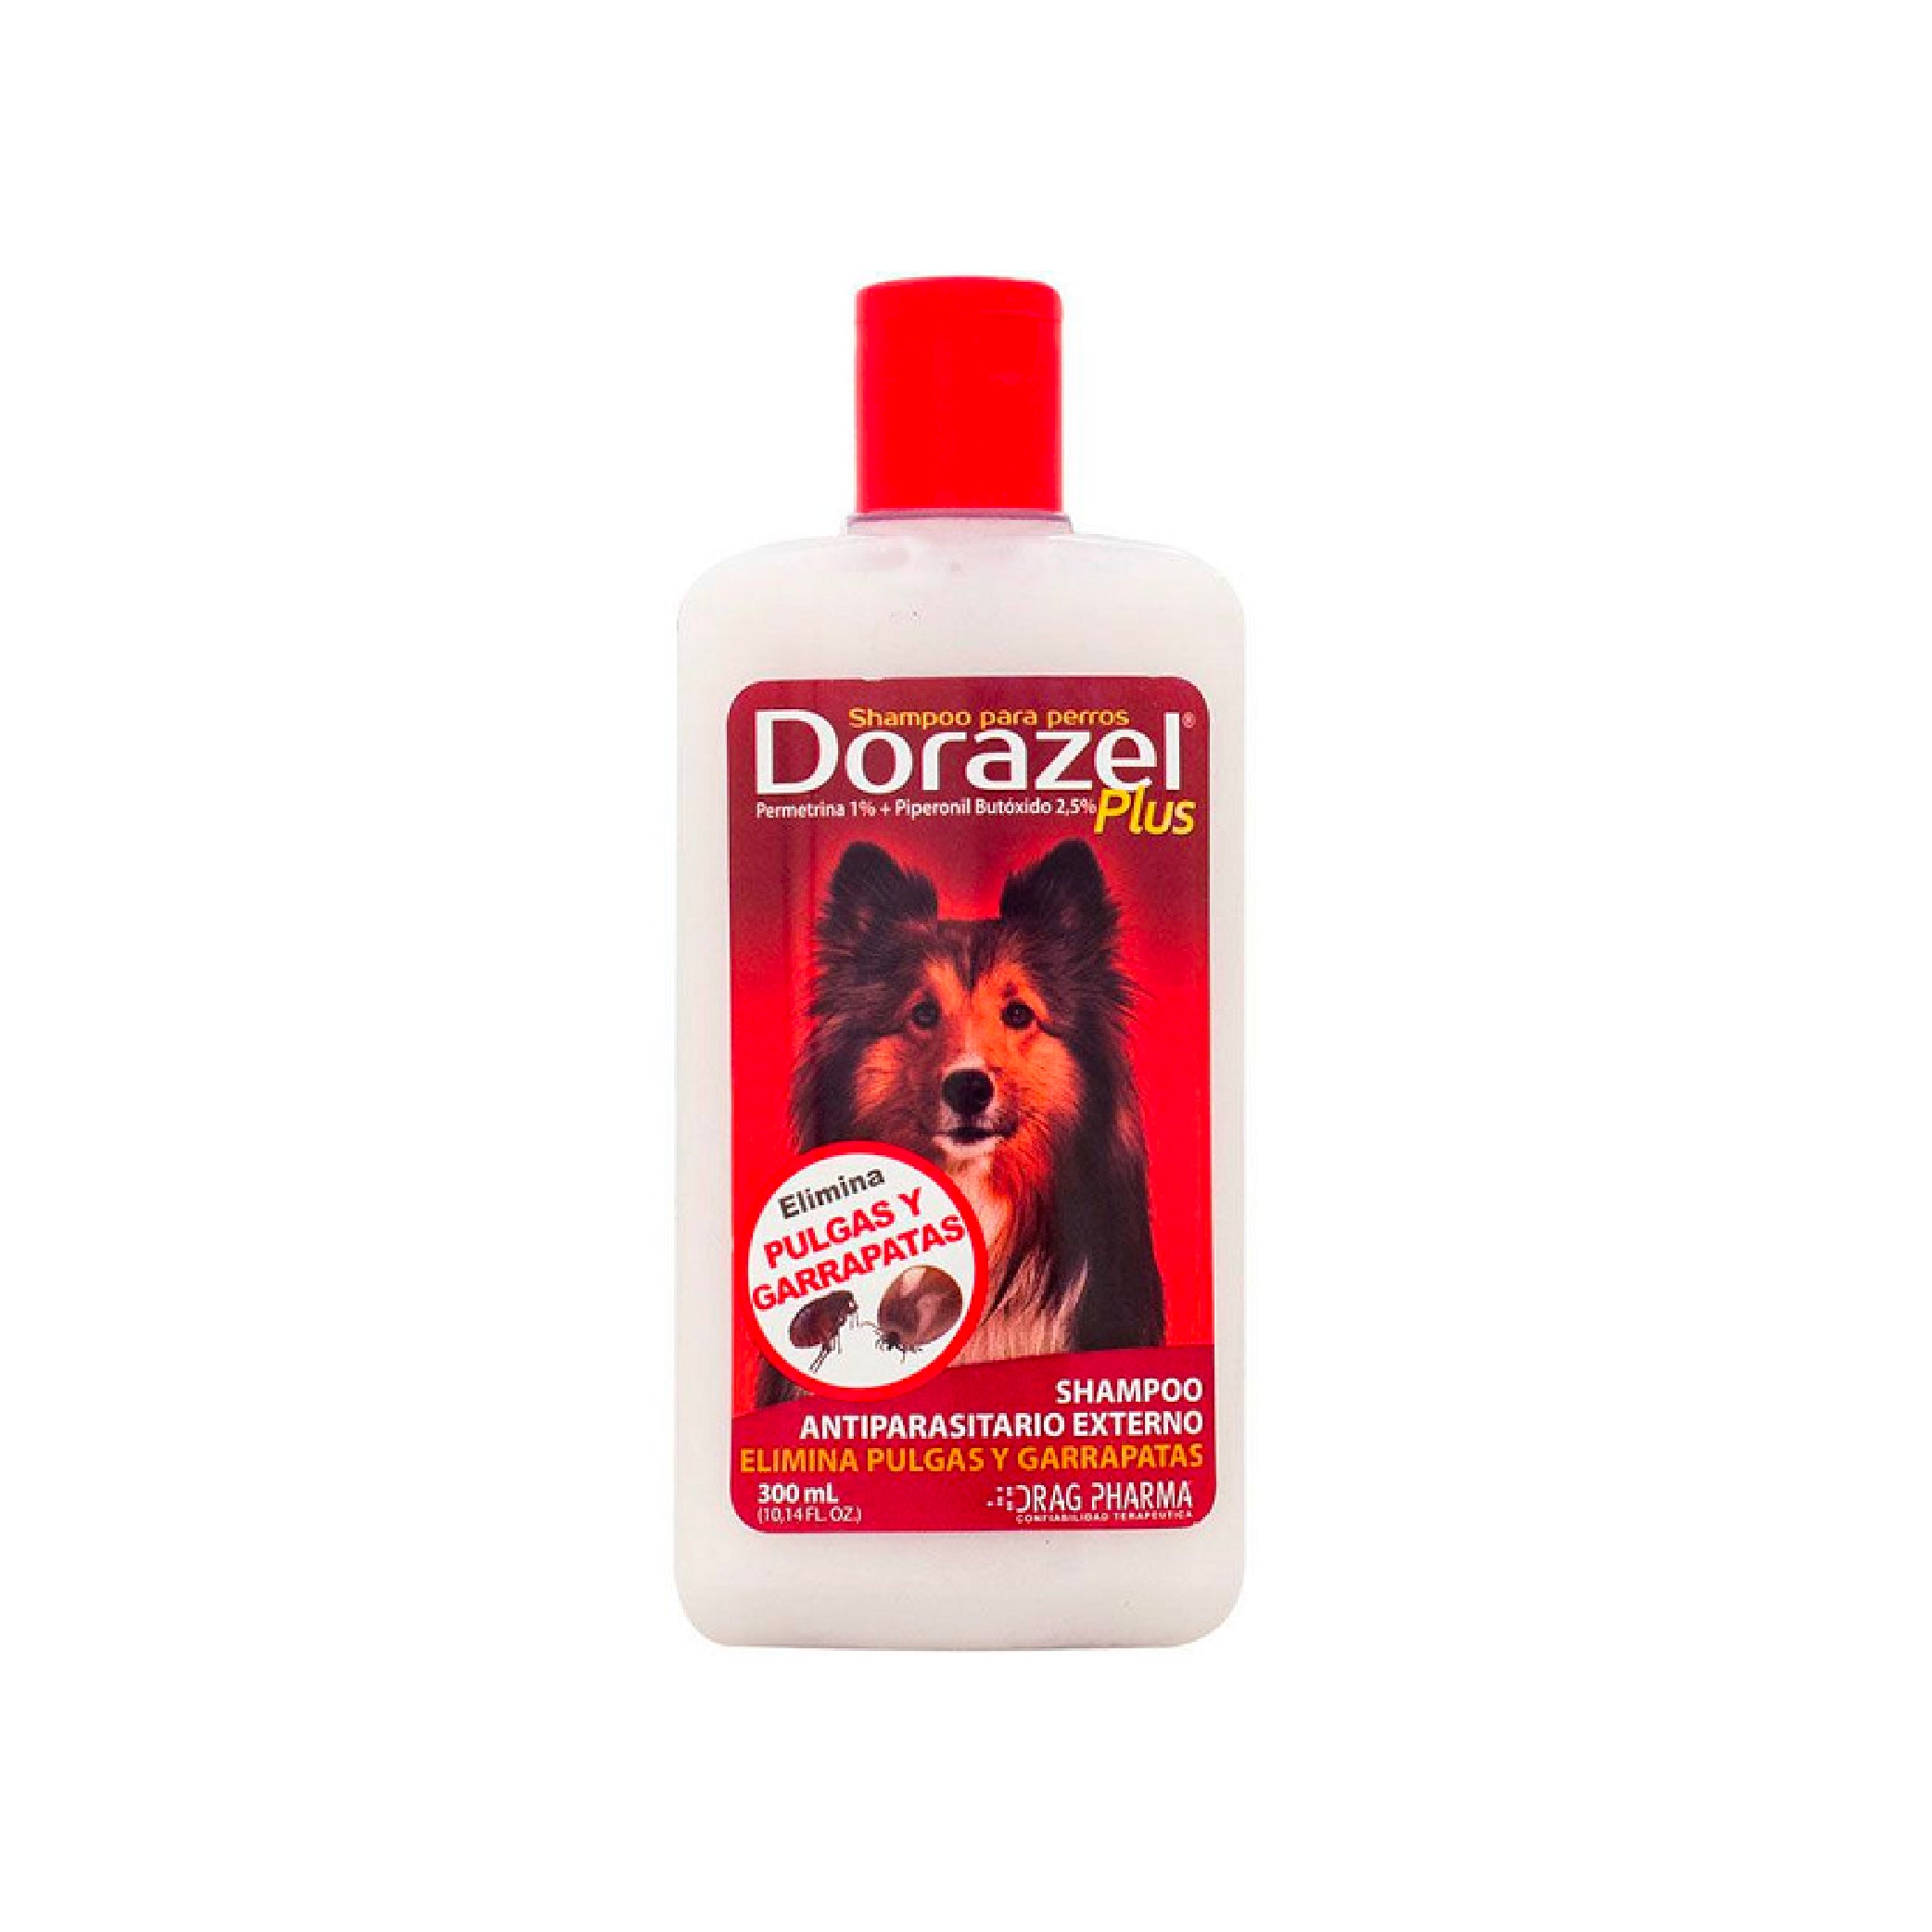 DORAZEL PLUS Shampoo x 300ml